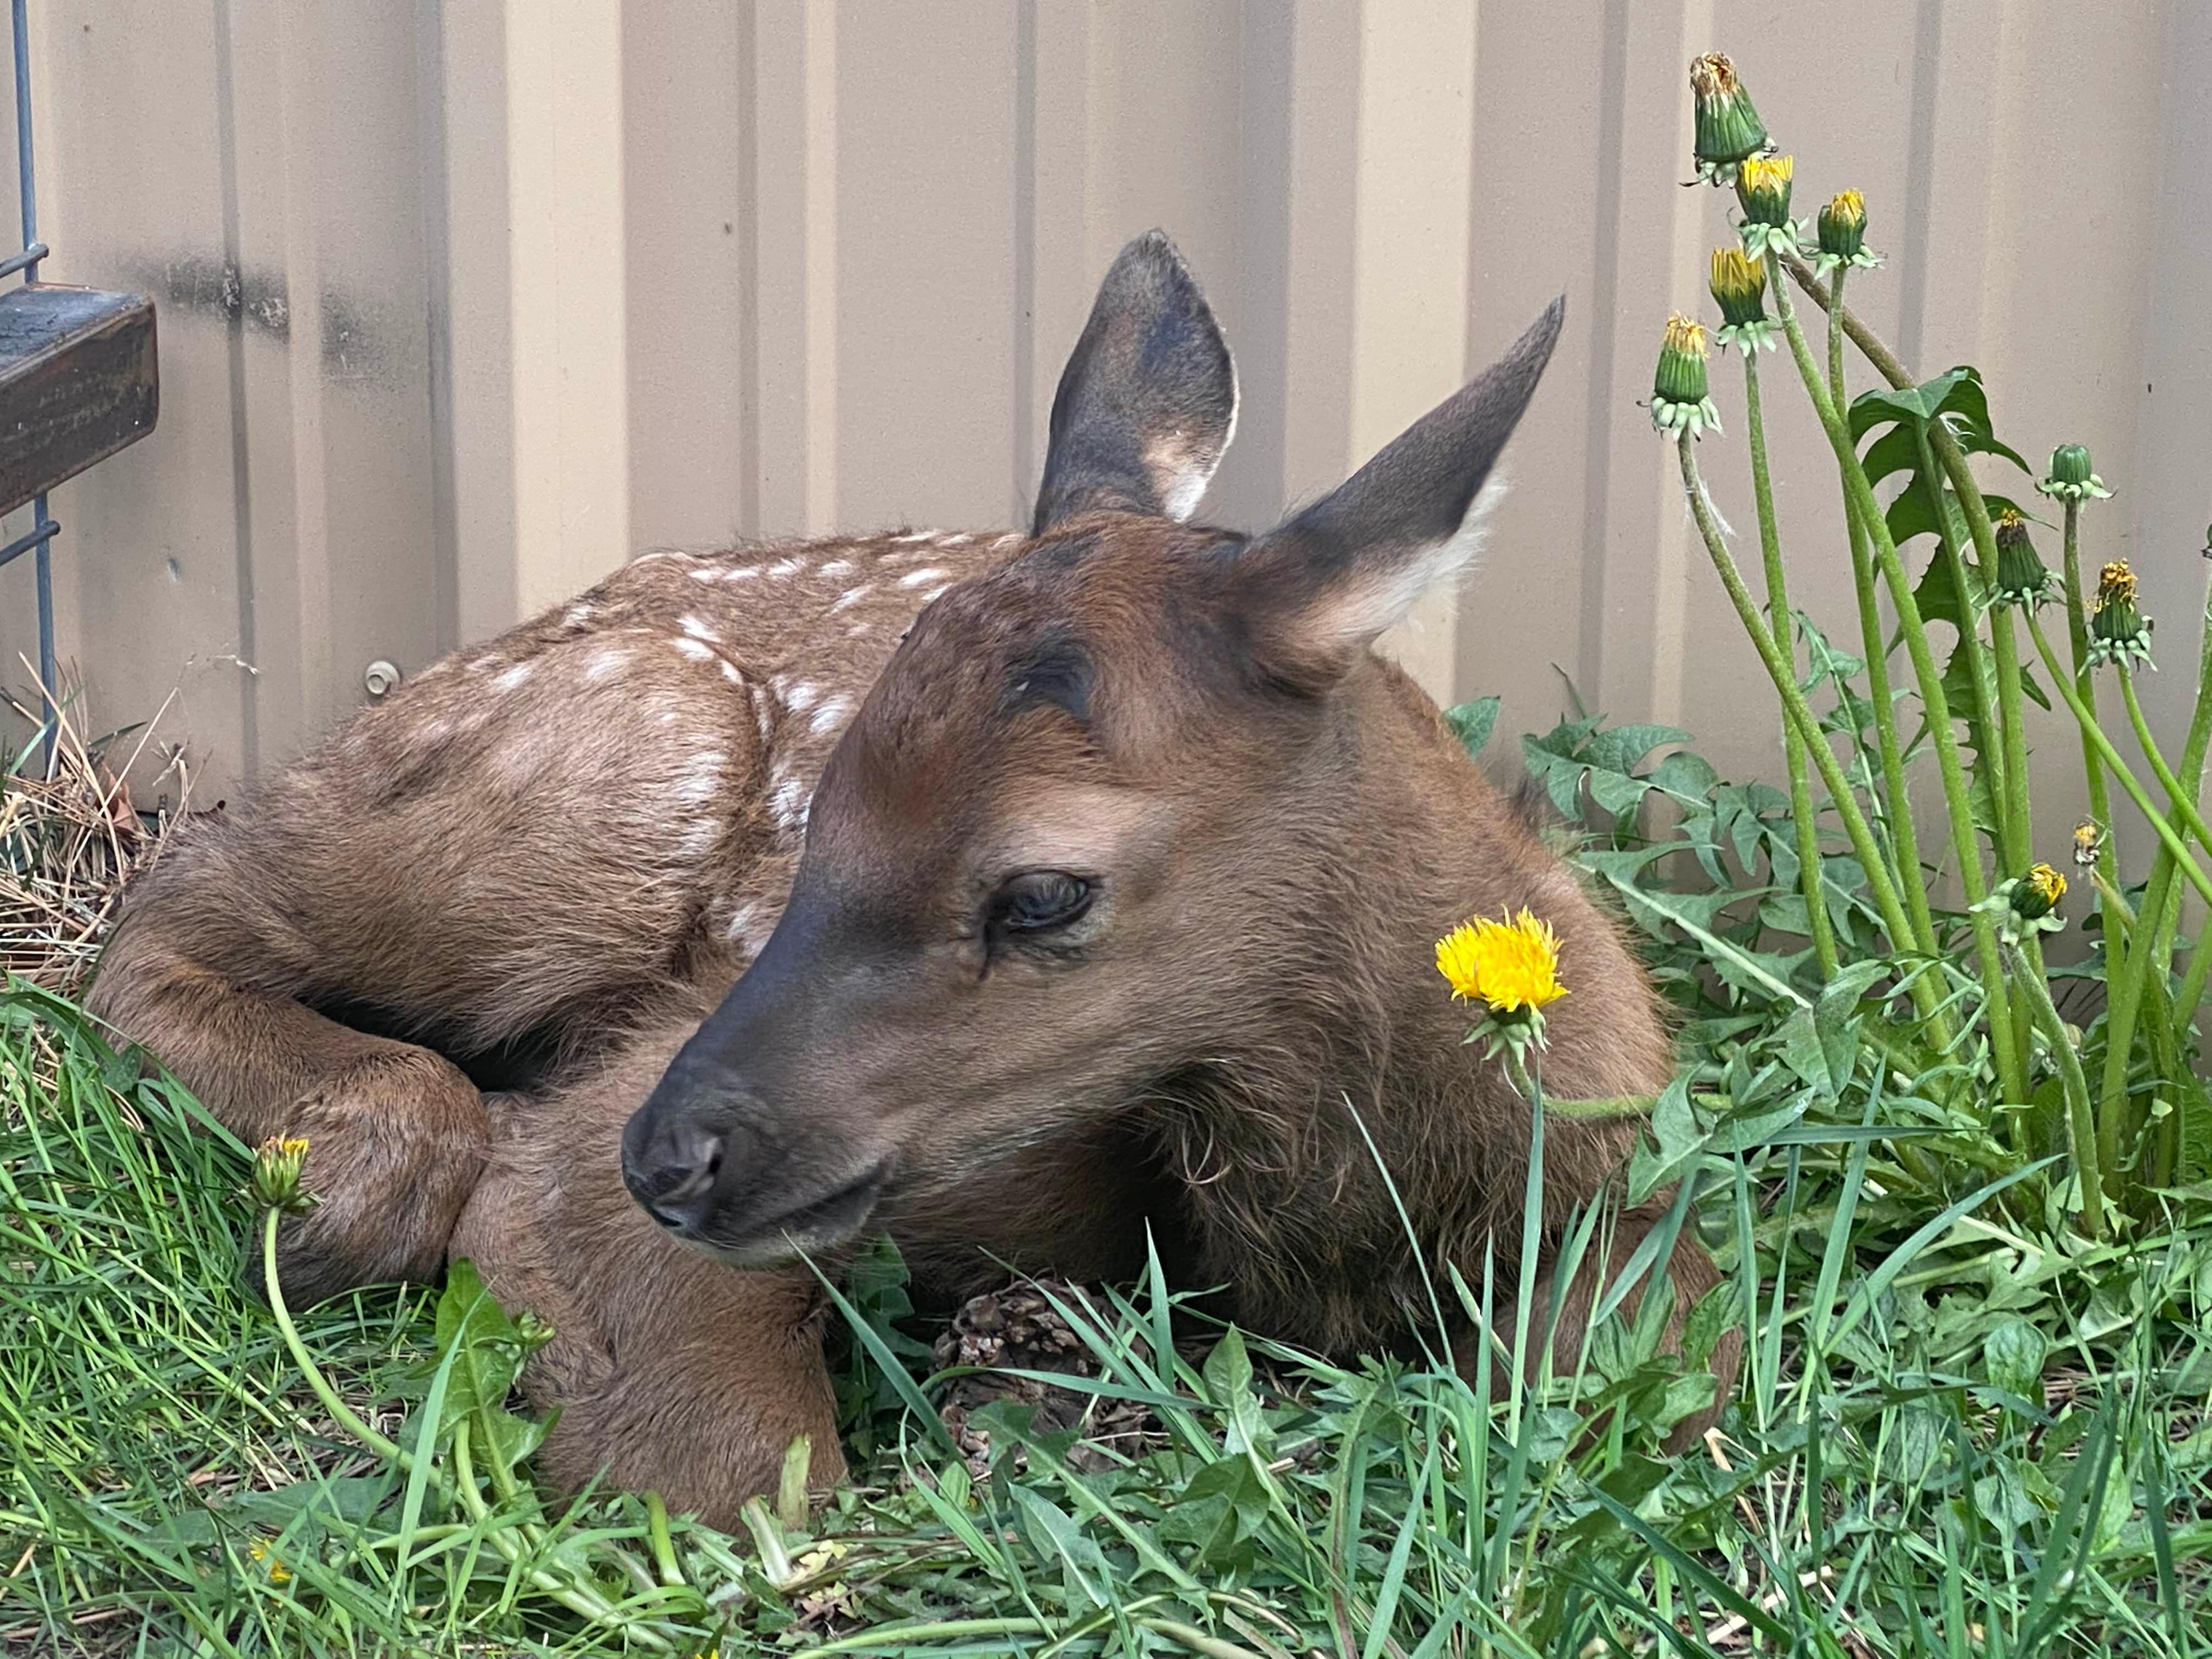 An elk calf lies on grass